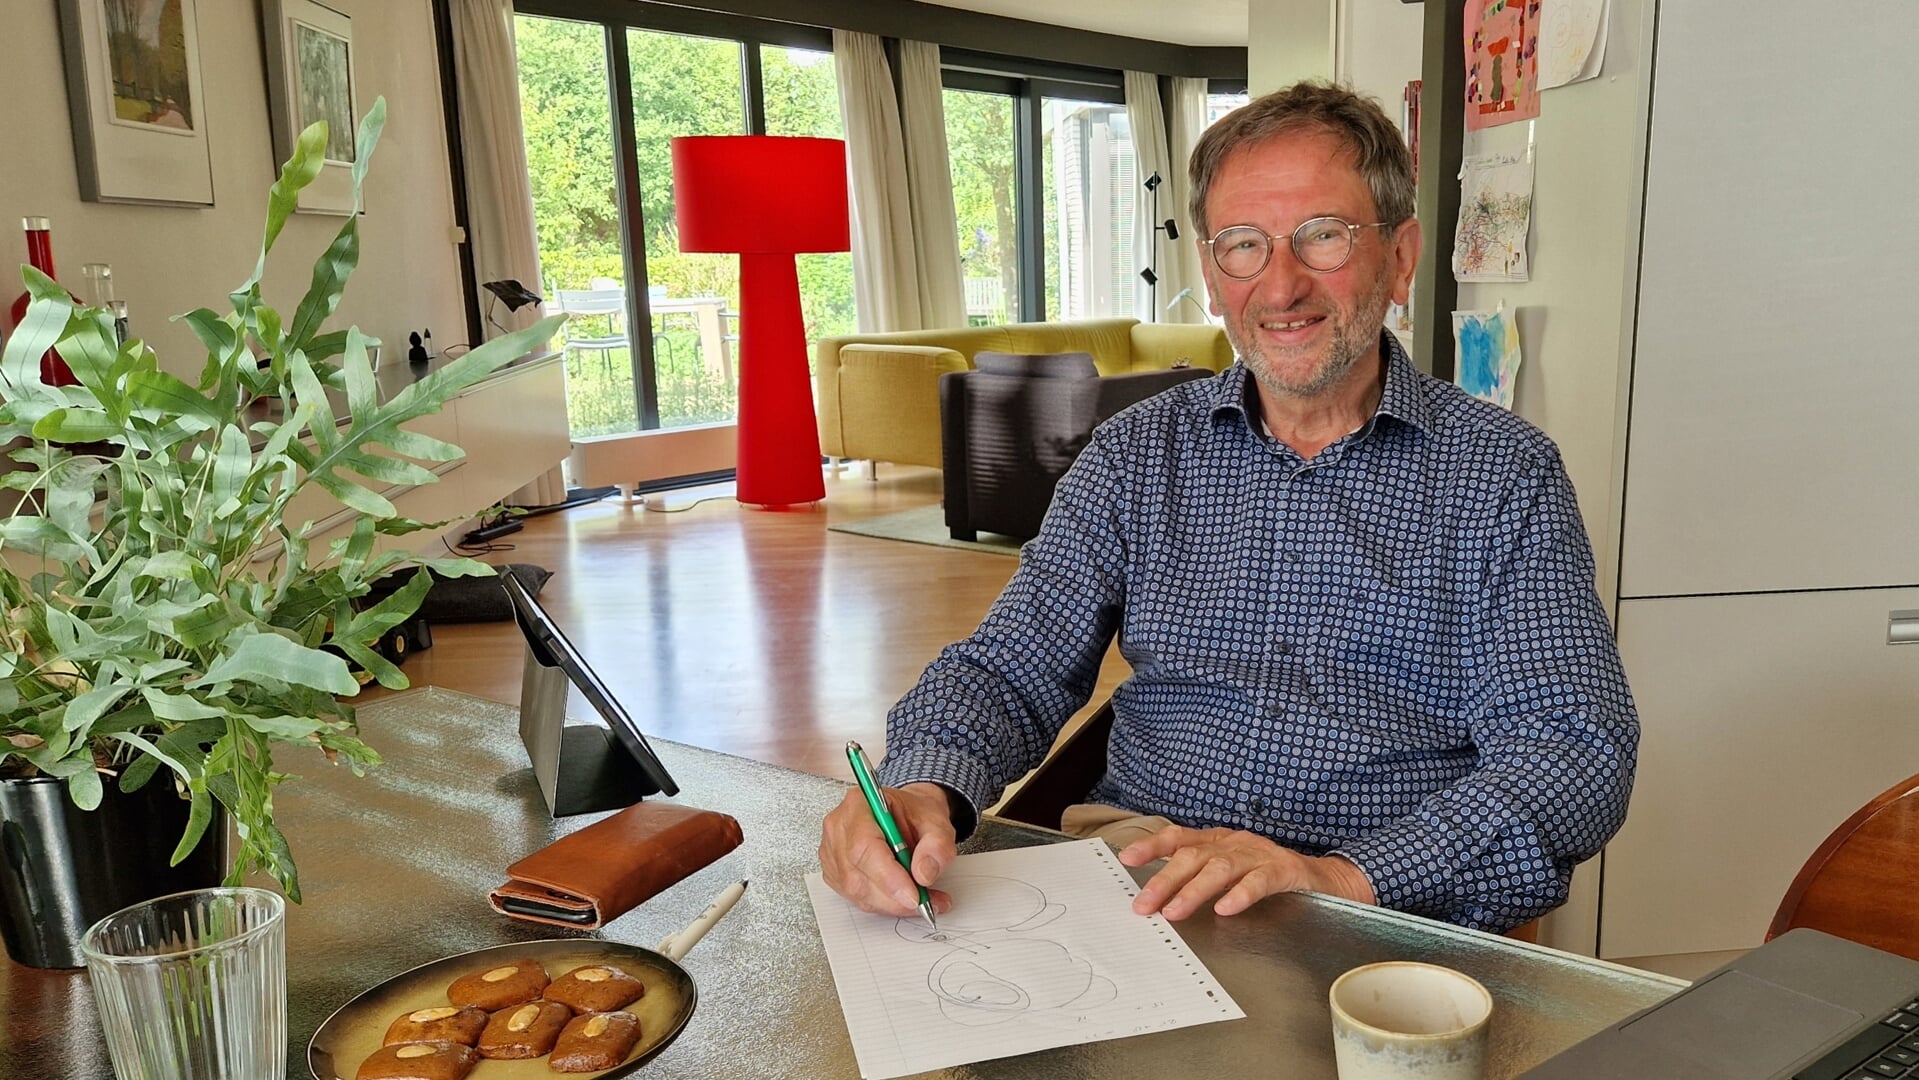 Henk Struikmans illustreerde de werkwijze van bestraling van de borst en las soms voor uit zijn eigen levensverhaal